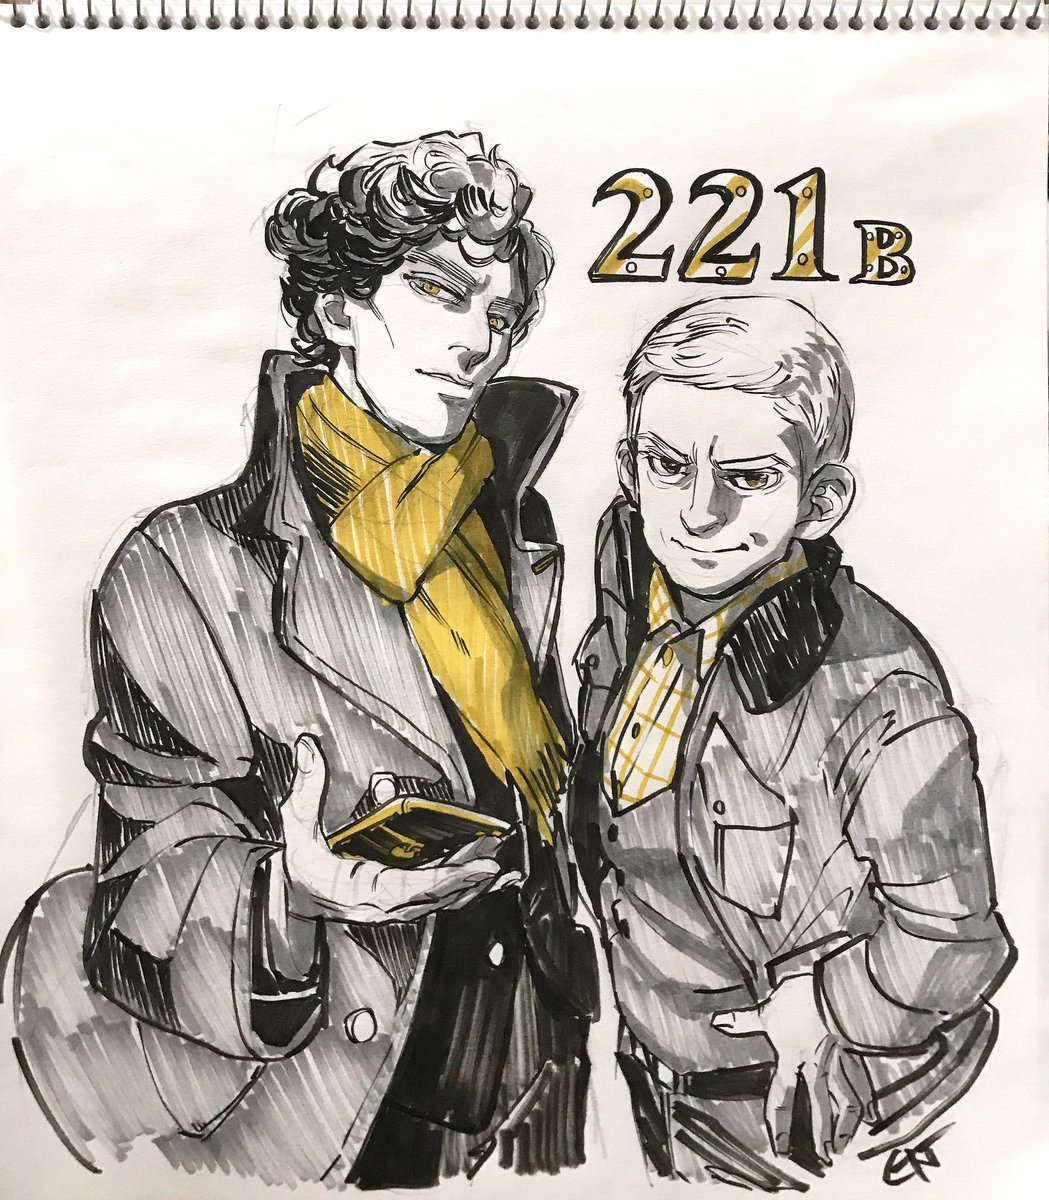 221Bの日、おめでとう🎊🍾
BBC版!アナログで描きました。
2014年、同人の世界に引き込み、人間の絵を描く機会をたくさん与えてくれた名作。カッコいい2人!大好きです。 